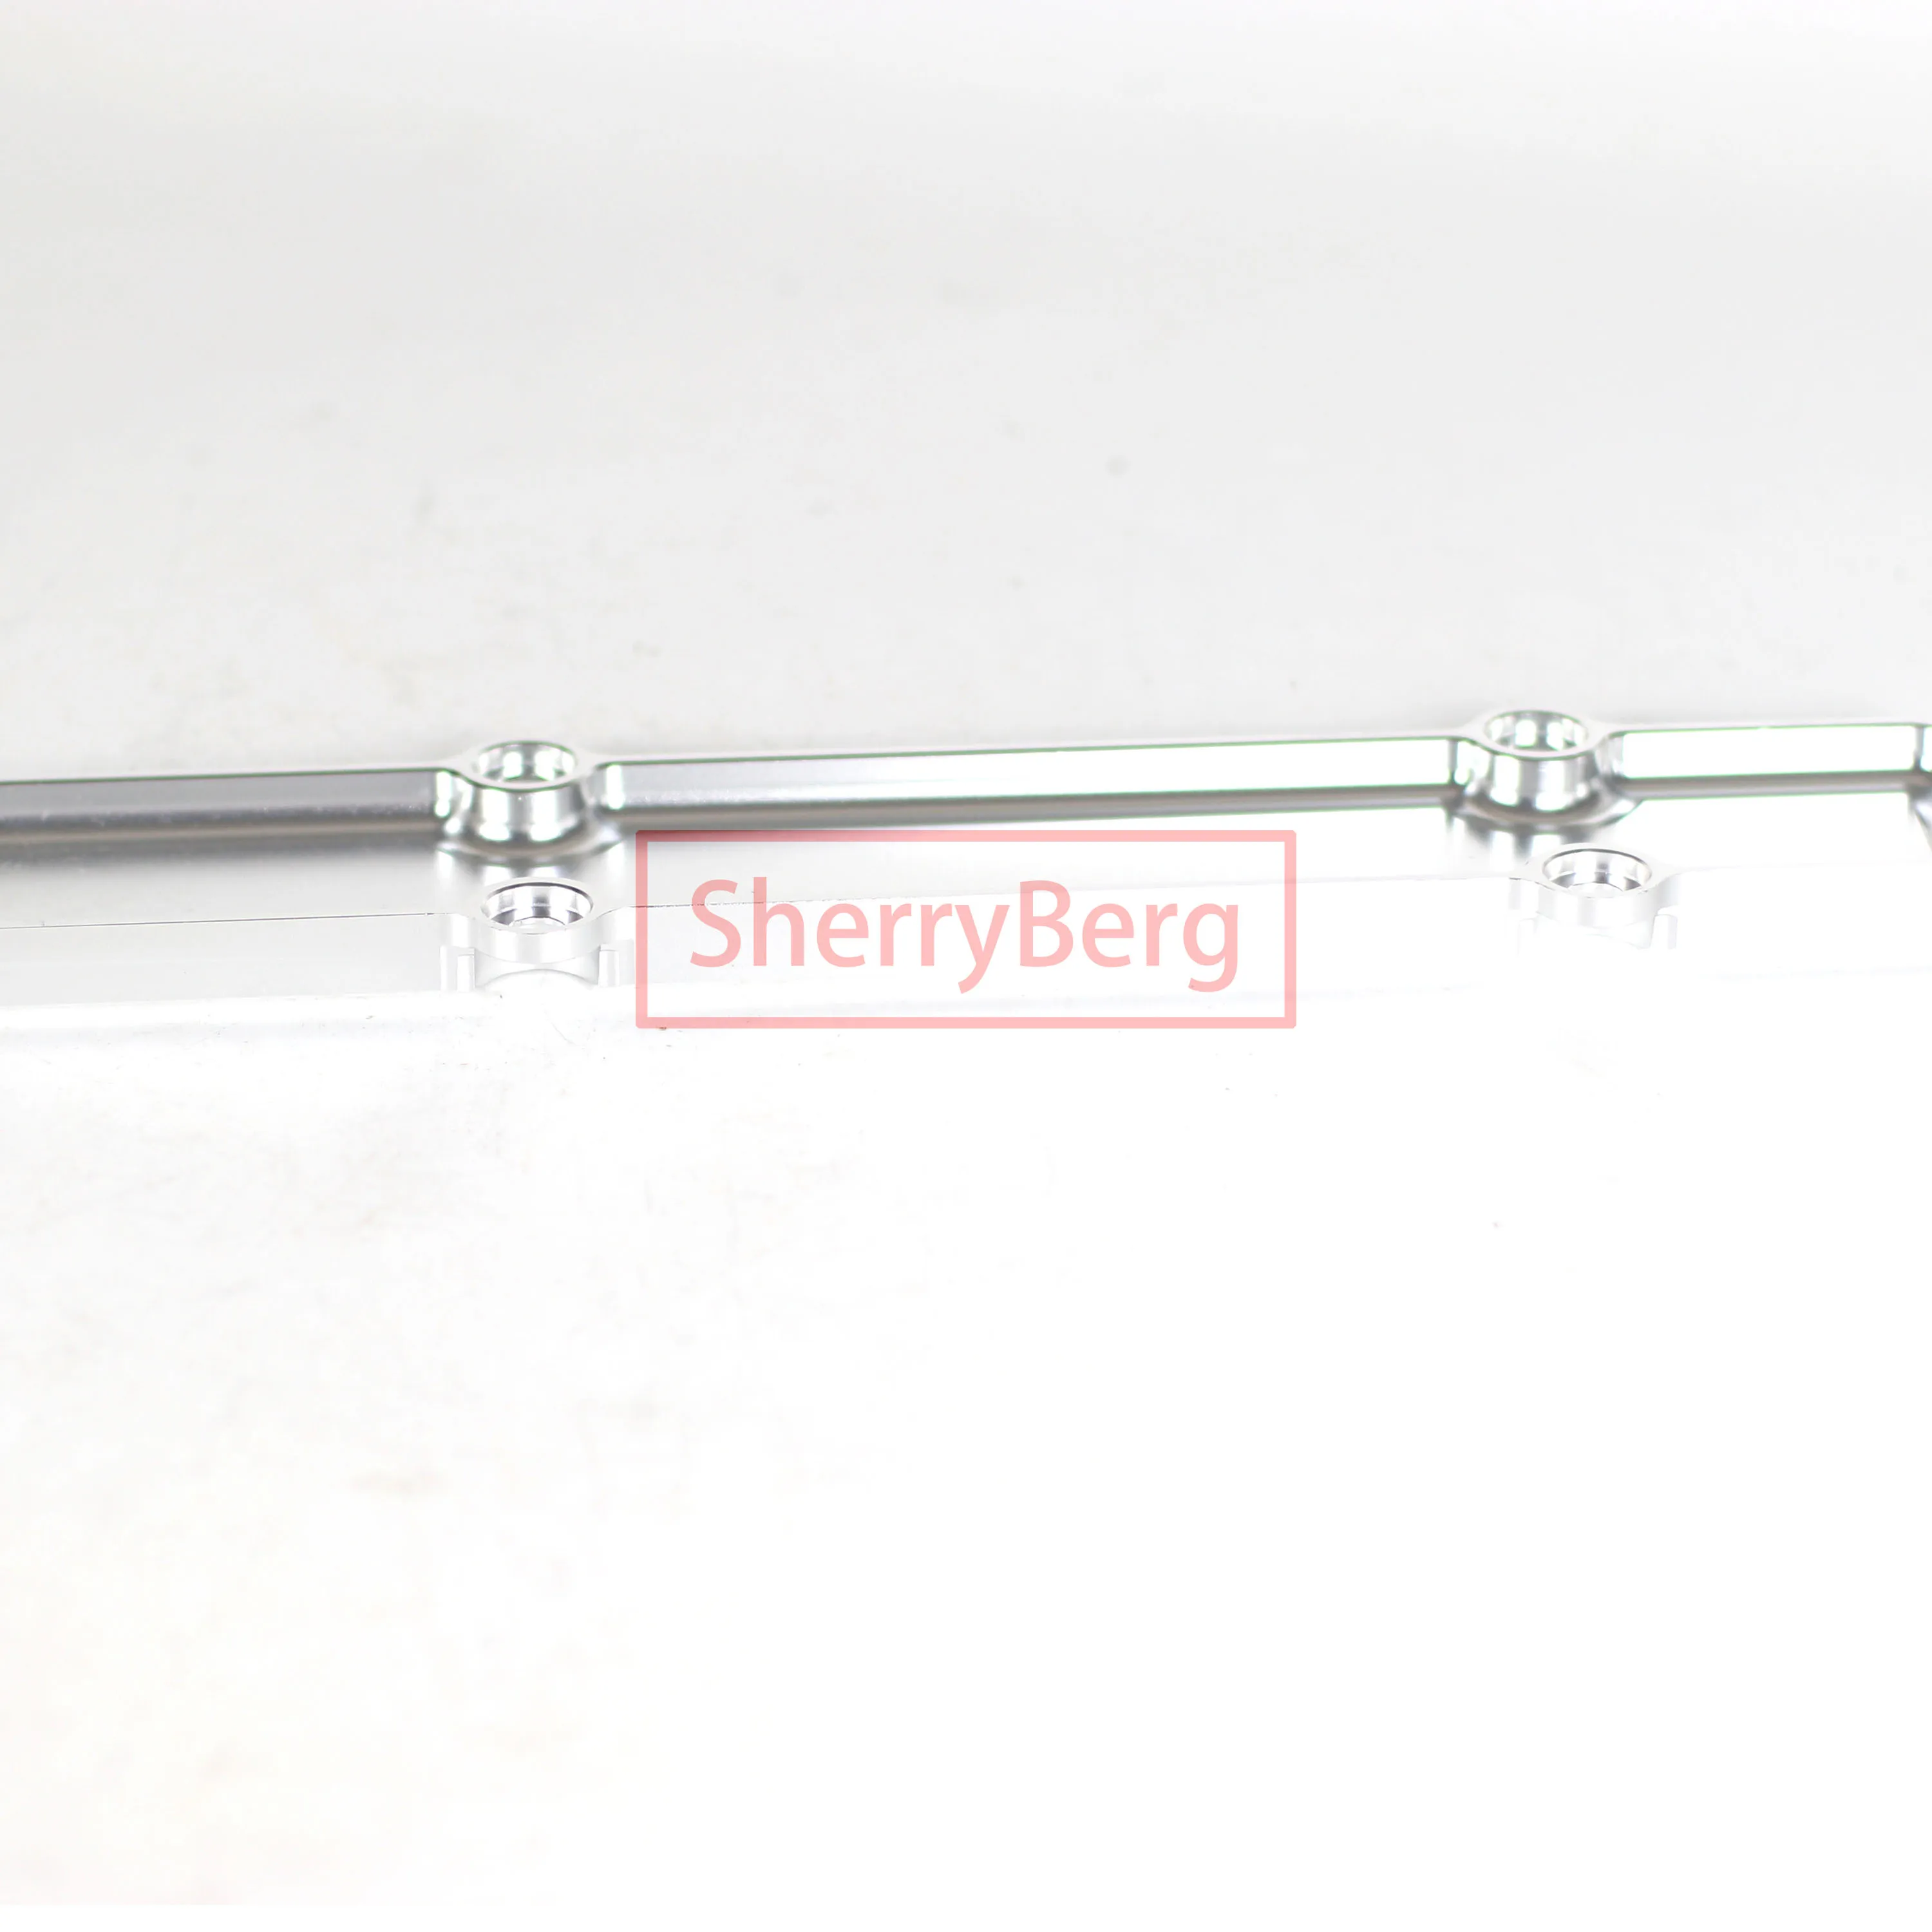 Алюминиевая крышка свечи зажигания серебристого цвета SherryBerg подходит для Honda Civic B-Series B16 B18 B16, B16a2, B18c, B18c4, B20... Изображение 2 